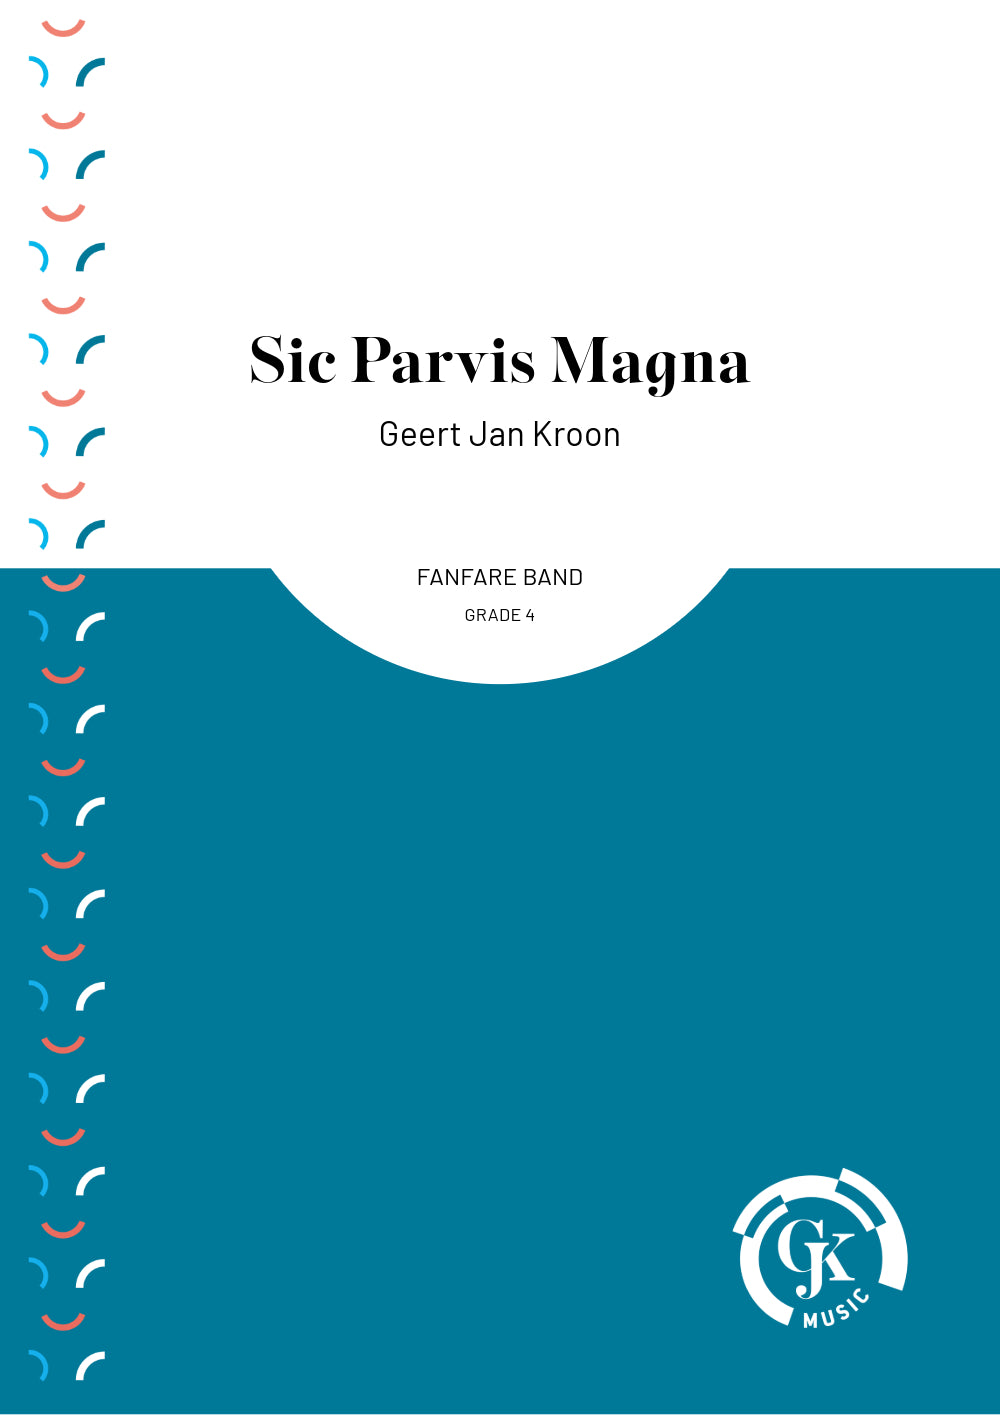 Sic Parvis Magna - Fanfare